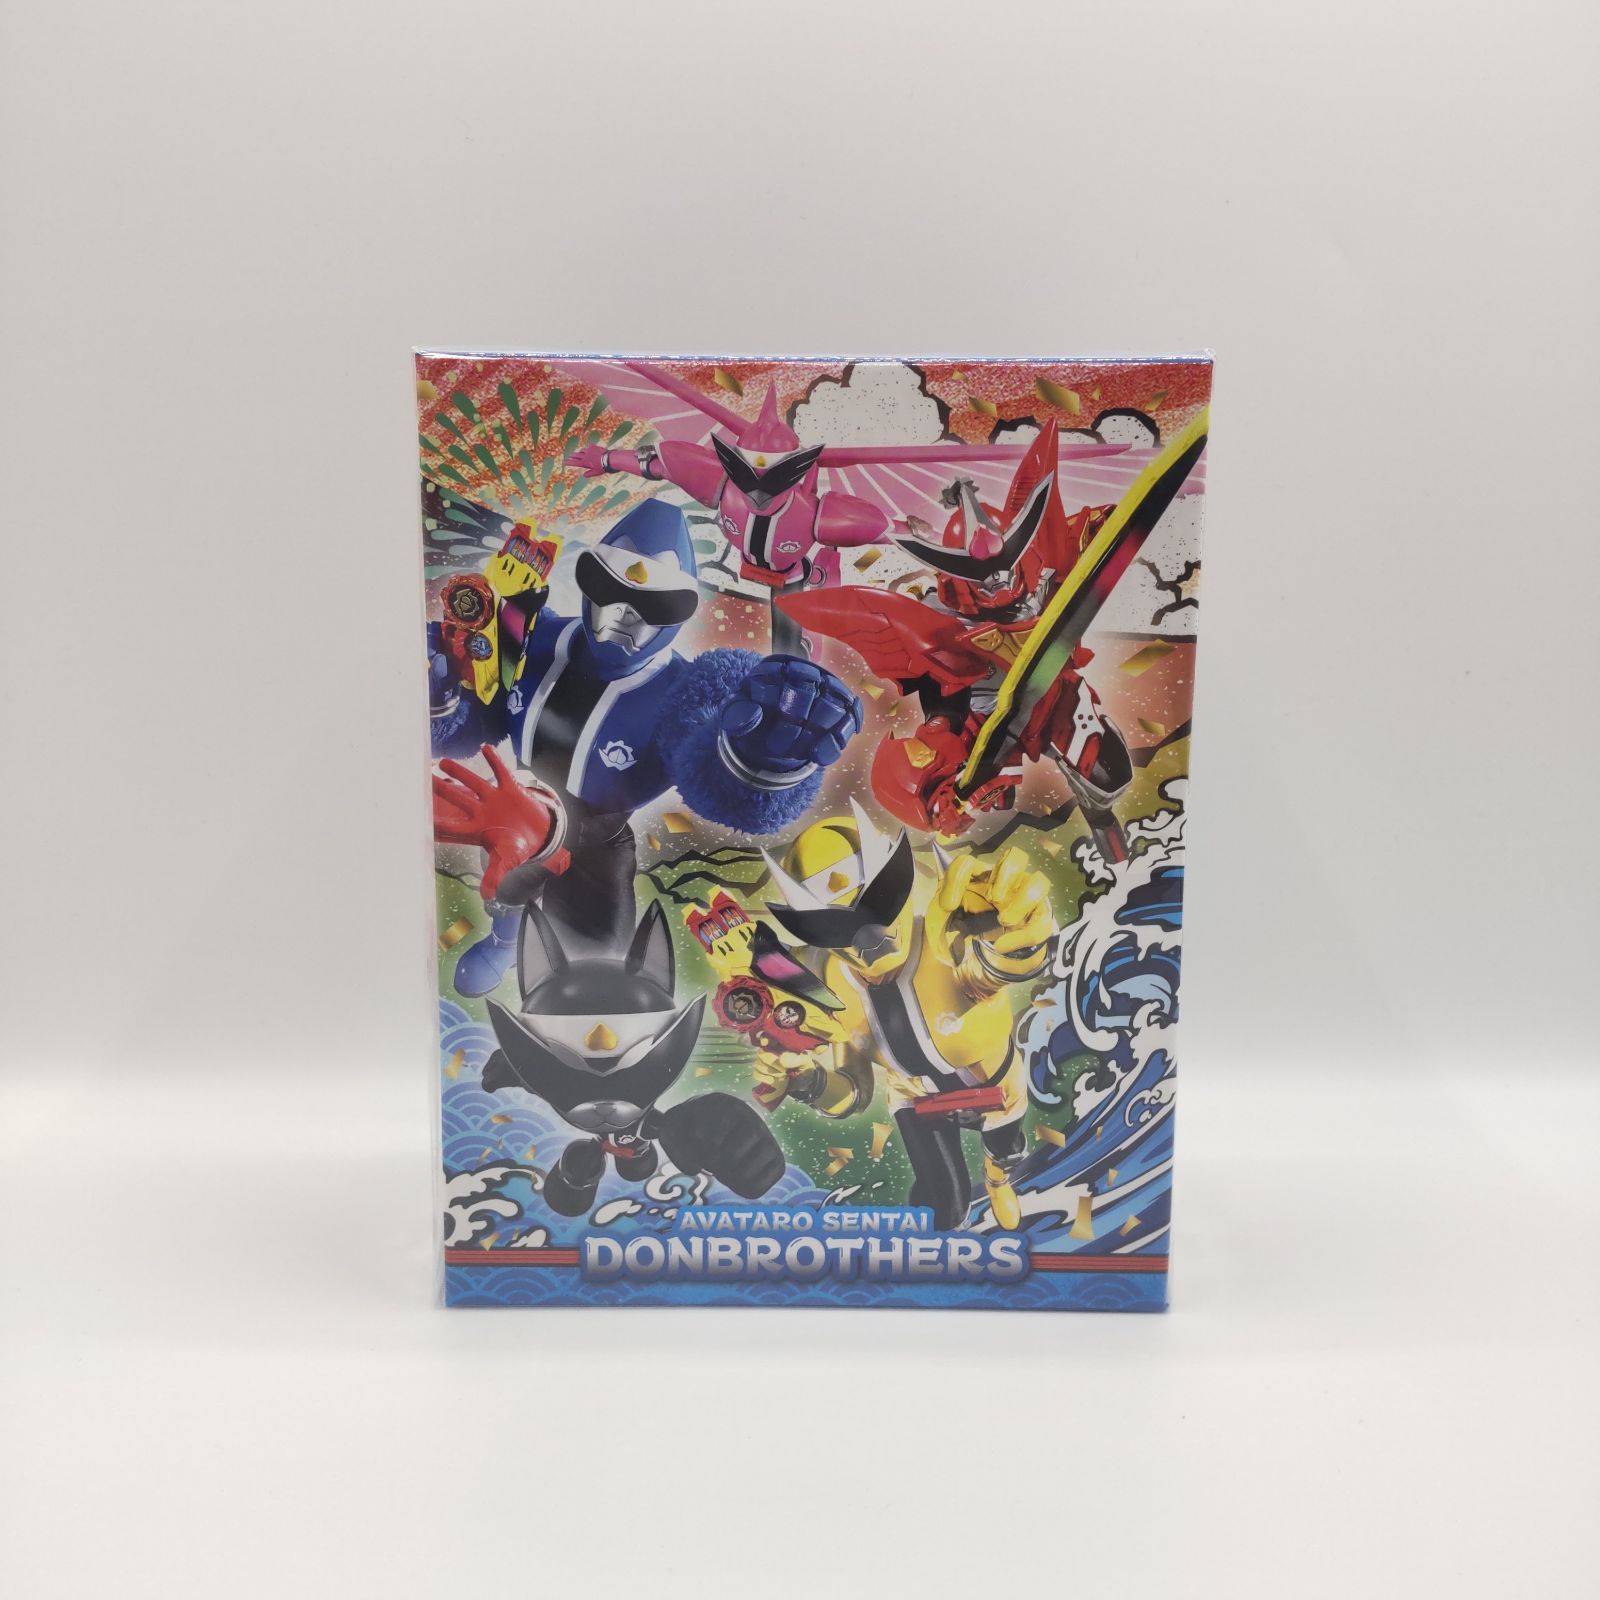 スーパー戦隊シリーズ 暴太郎戦隊 ドンブラザーズ Blu-ray 全巻セット 全巻収納BOX付き - メルカリ